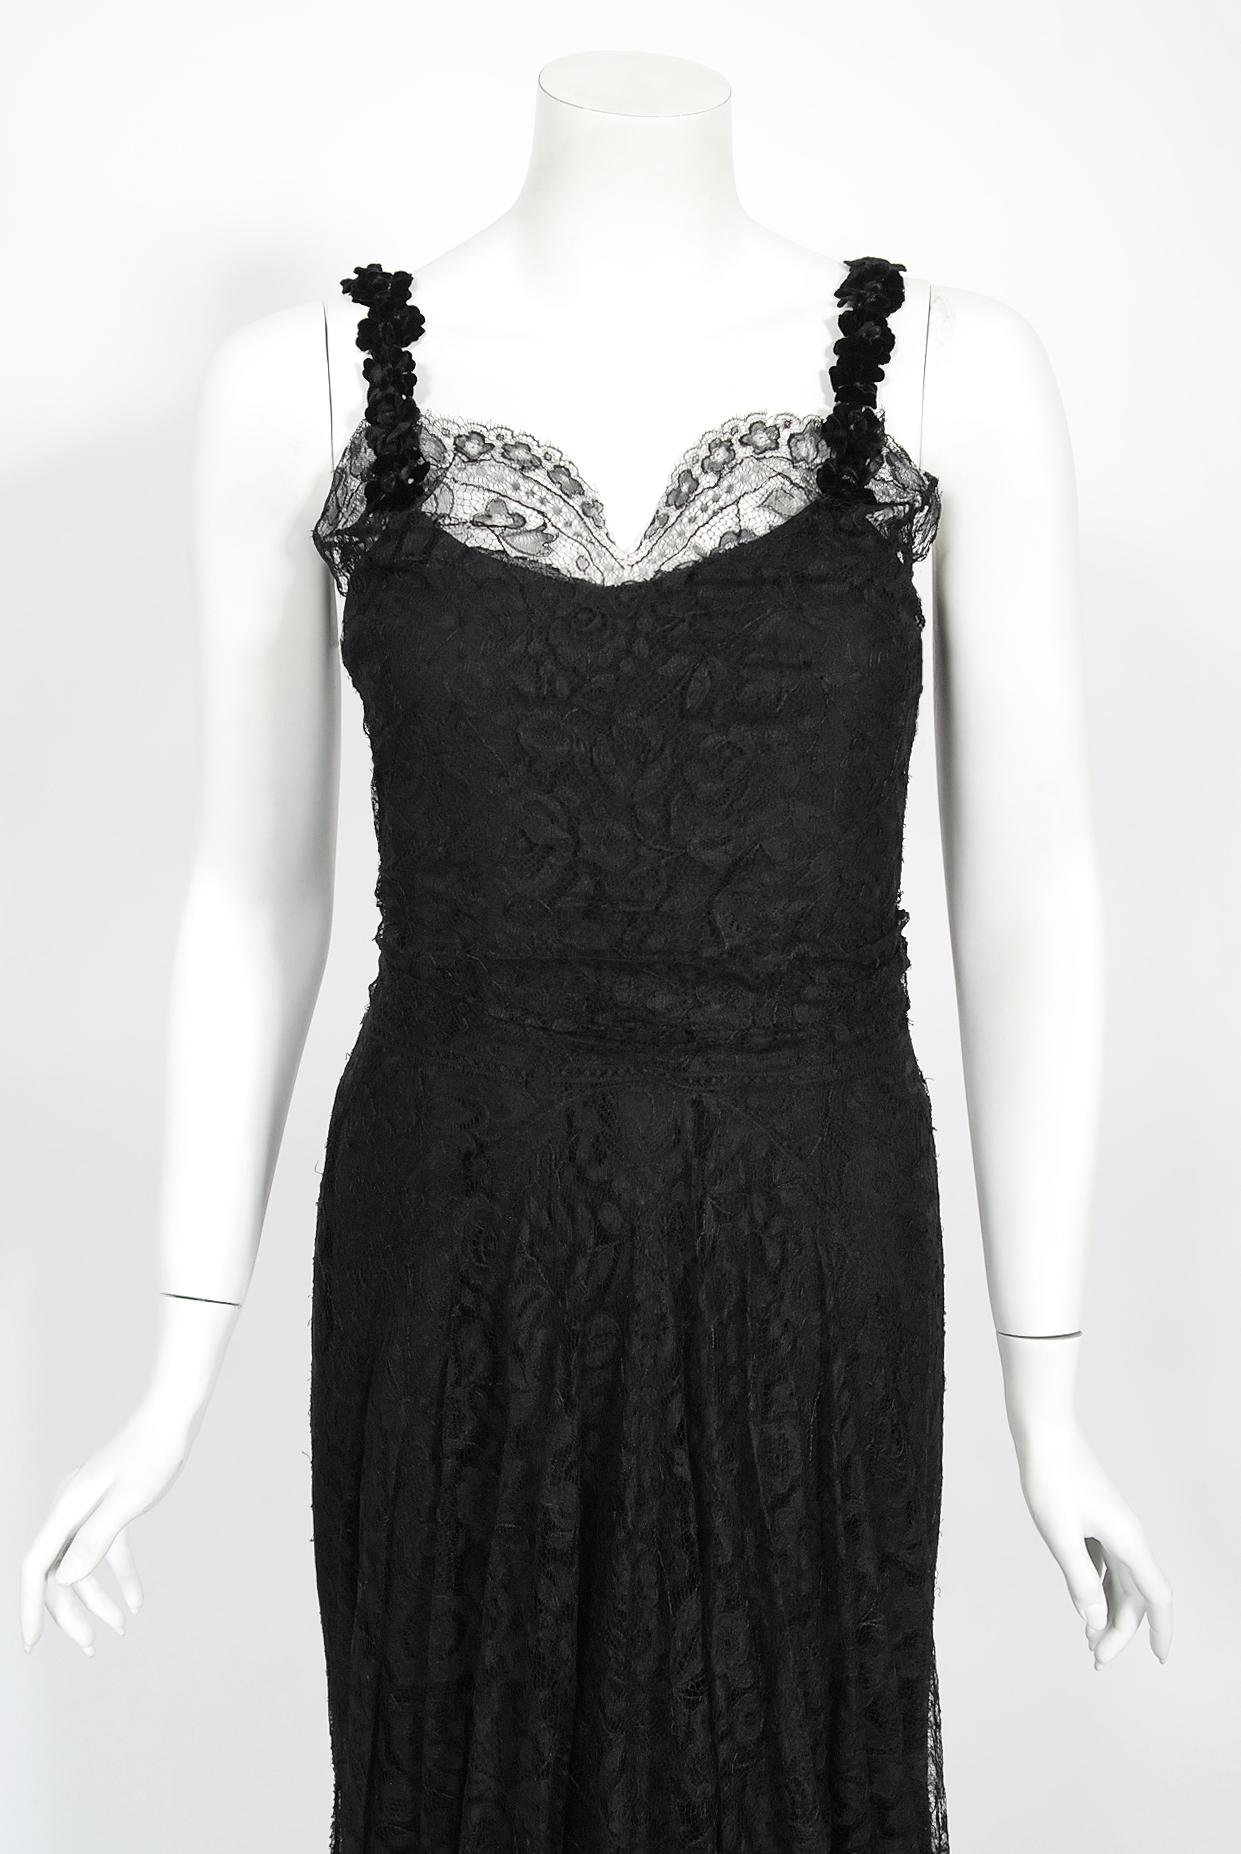 Ein prächtiges Bonwit Teller & Co Couture-Kleid aus schwarzer Spitze mit Schrägschnitt aus der glamourösen 